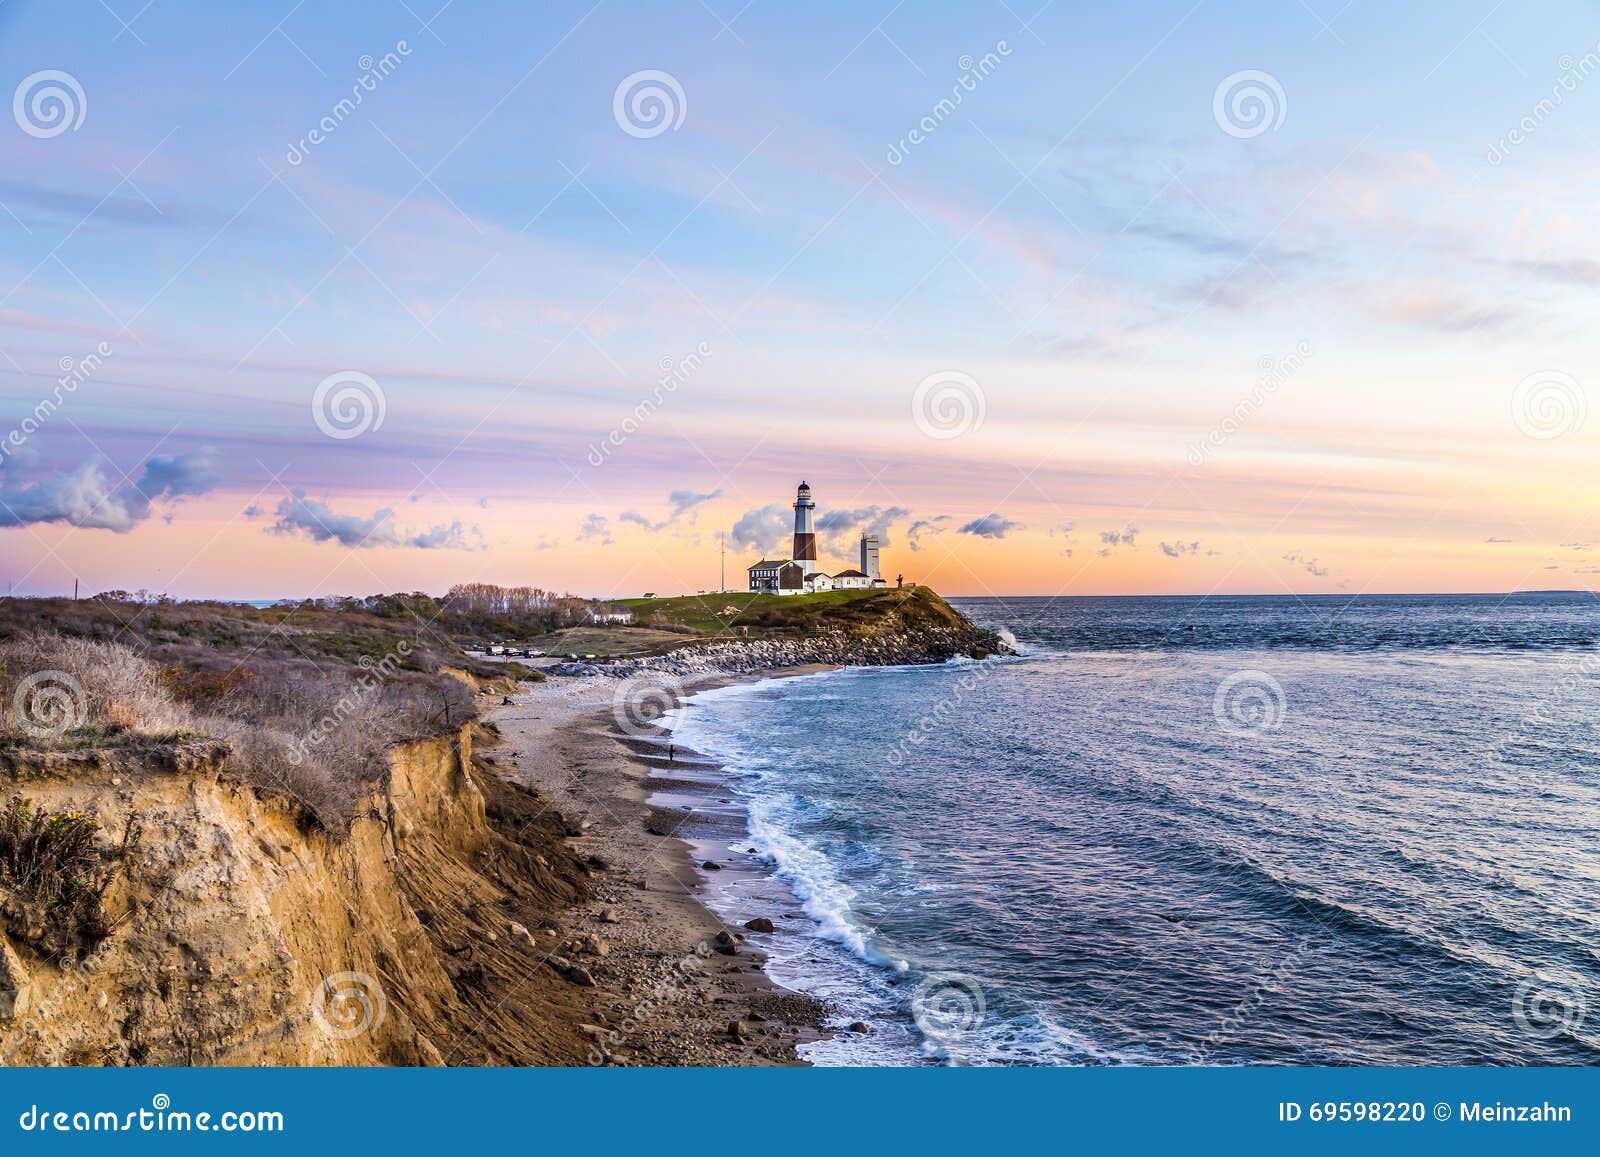 montauk point light, lighthouse, long island, new york, suffolk